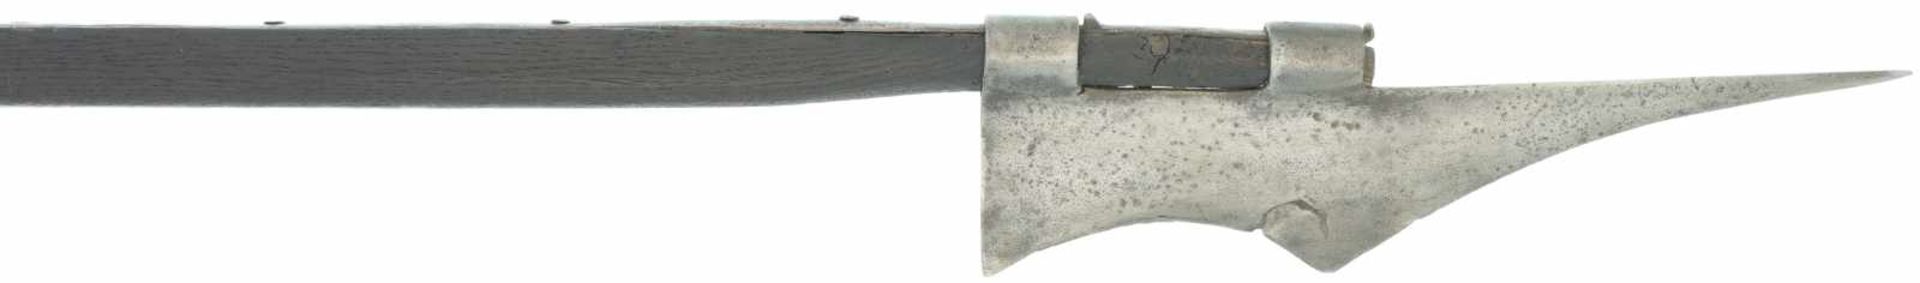 Halbarte Rossschinder Urner-Typ 14/15.Jhdt. Kl 420mm, TL 2530mm, konkav geschwungene Schneide und